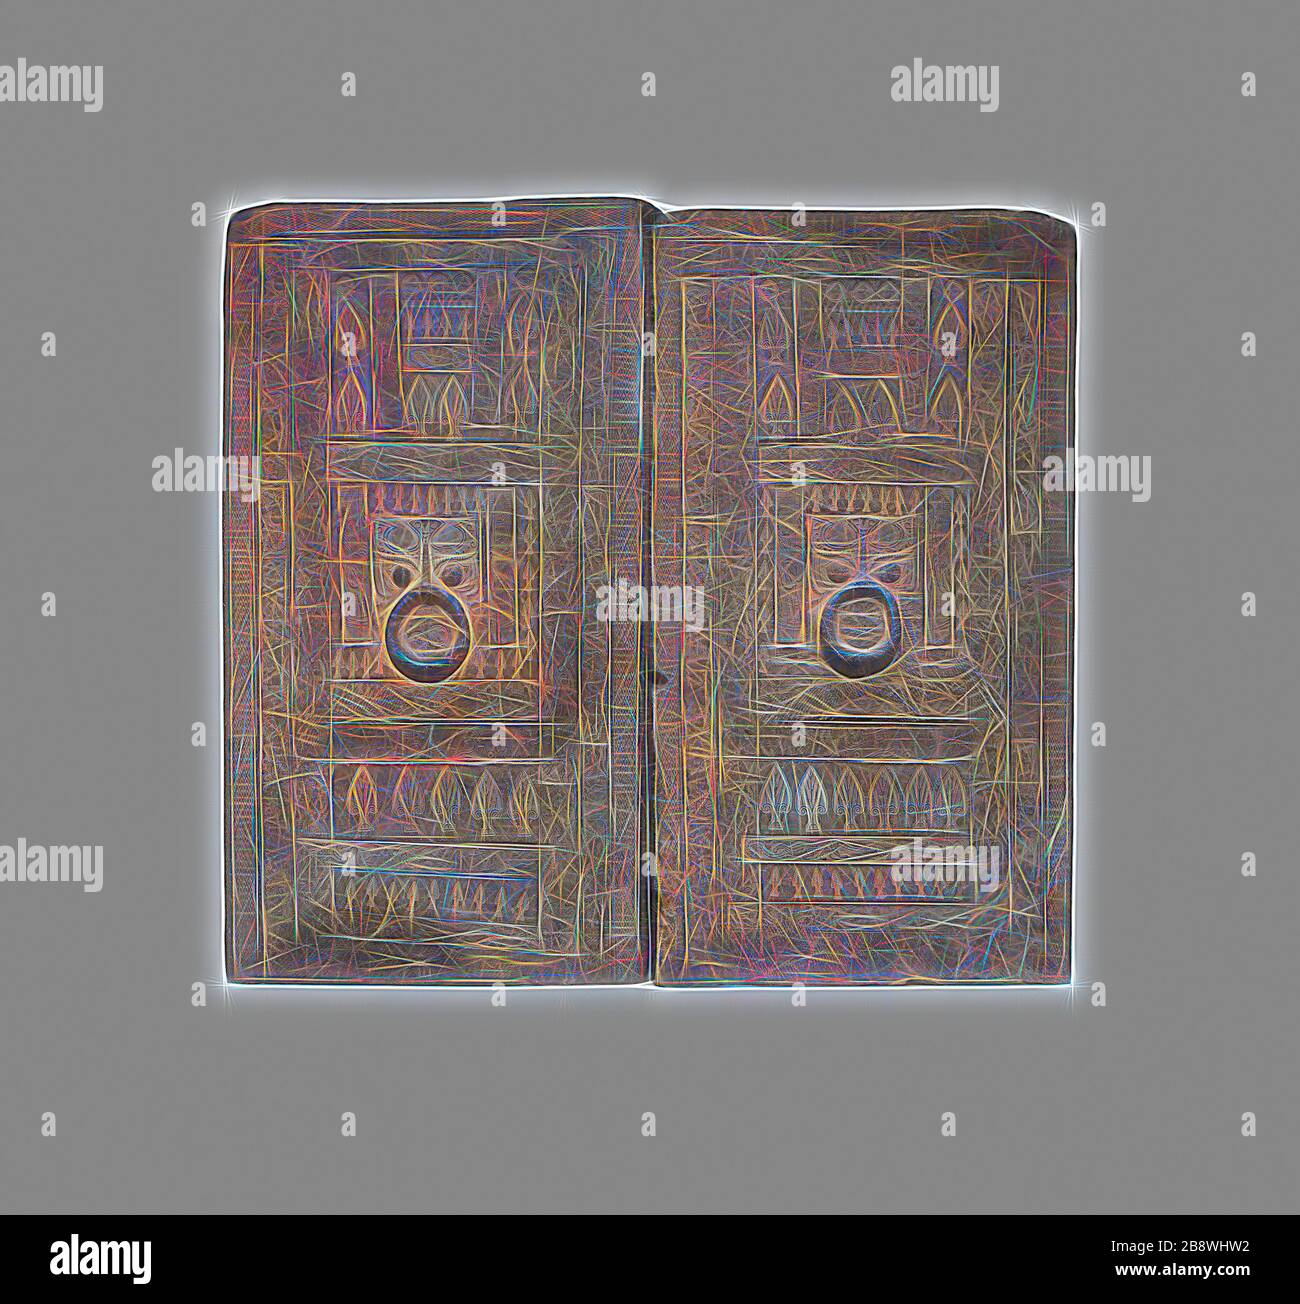 Coppia di Tomba Porte da camera, dinastia Han Occidentale (206 a.C.-d.C.) 9), 1st secolo a.C., Cina, probabilmente da Zhengzhou, provincia di Henan, Cina, terracotta grigia con decorazione impressa e scolpita, A (porta sinistra): 92,6 × 52,0 × 7,2 cm (36 7/16 × 20 1/2 × 2 13/16 in.), b (porta destra): 91,4 × 49,9 × 7,2 cm (36 × 19 5/8 × 2 13/16 in.), Reimagined by Gibon, disegno di calore allegro di luminosità e raggi di luce radianza. Arte classica reinventata con un tocco moderno. La fotografia ispirata al futurismo, che abbraccia l'energia dinamica della tecnologia moderna, del movimento, della velocità e rivoluziona la cultura. Foto Stock